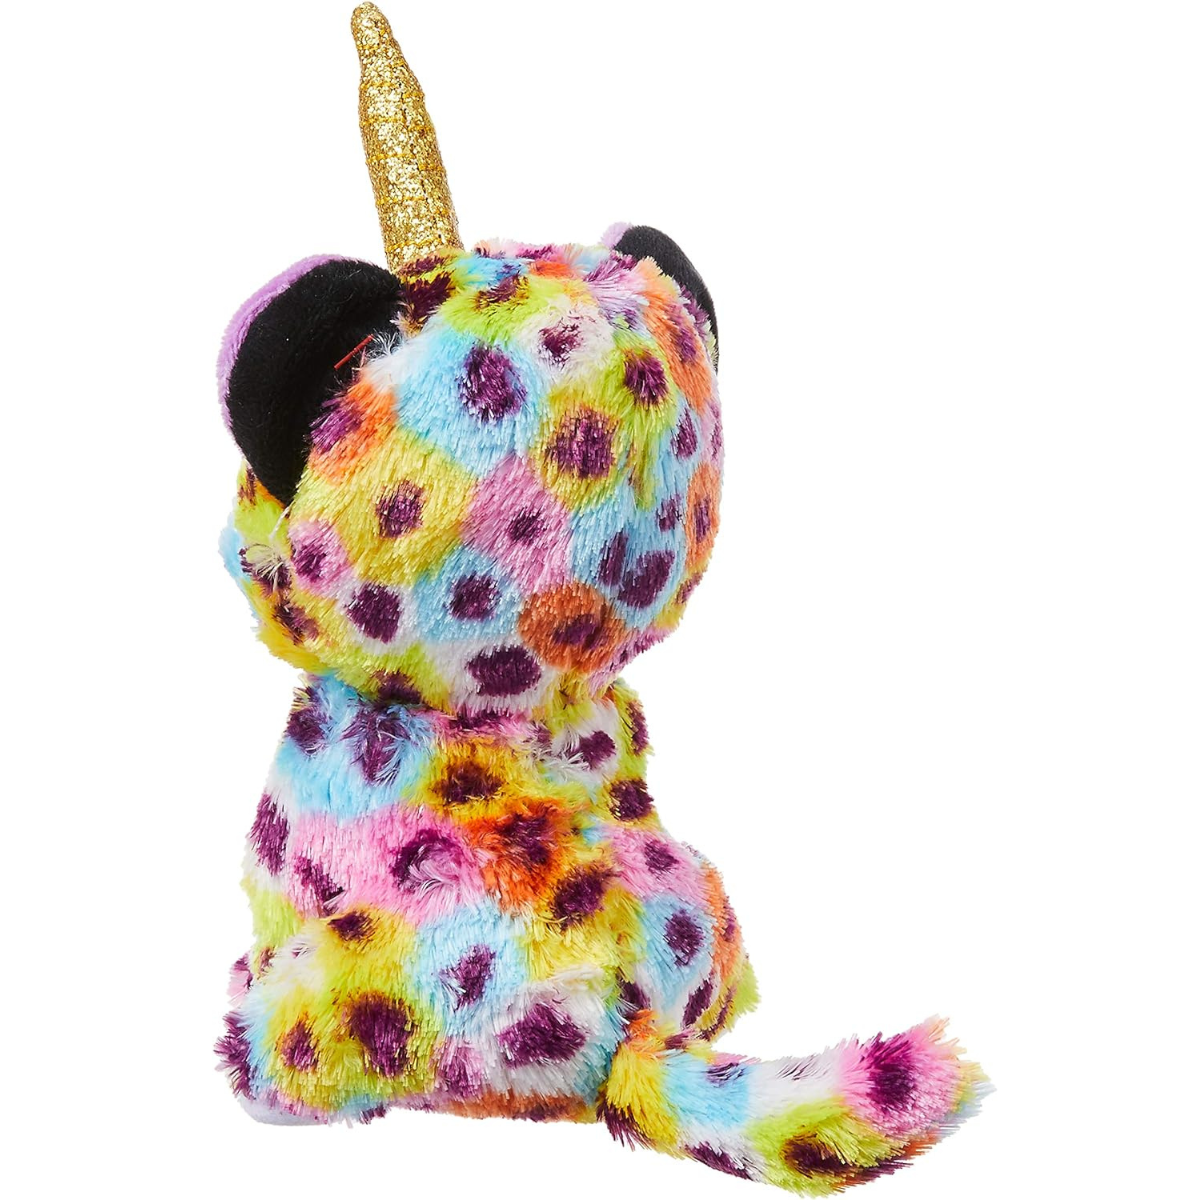 Ty - peluche - beanie boos - leopardo unicorno - giselle - colori arcobaleno - occhioni e orecchie viola glitter - il morbido peluche con gli occhi grandi scintillanti - 15 cm - 36284 - TY